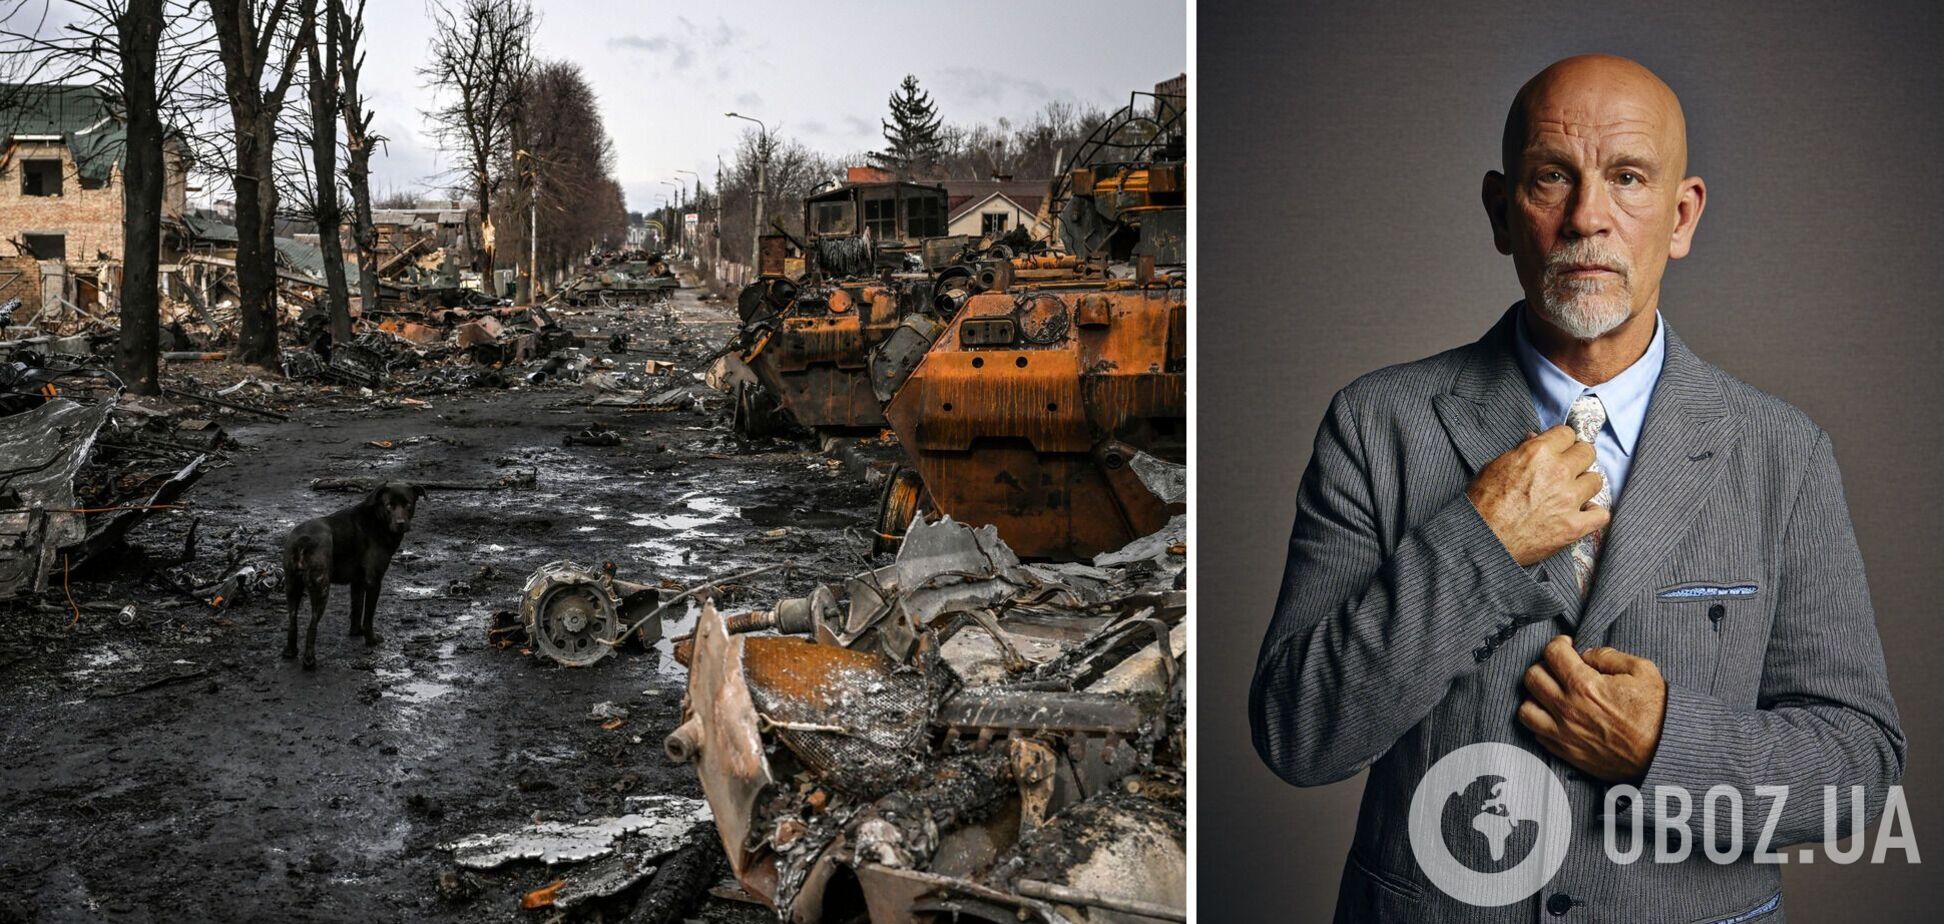 Джон Малкович назвал войну в Украине трагедией, но не рискнул осудить Путина